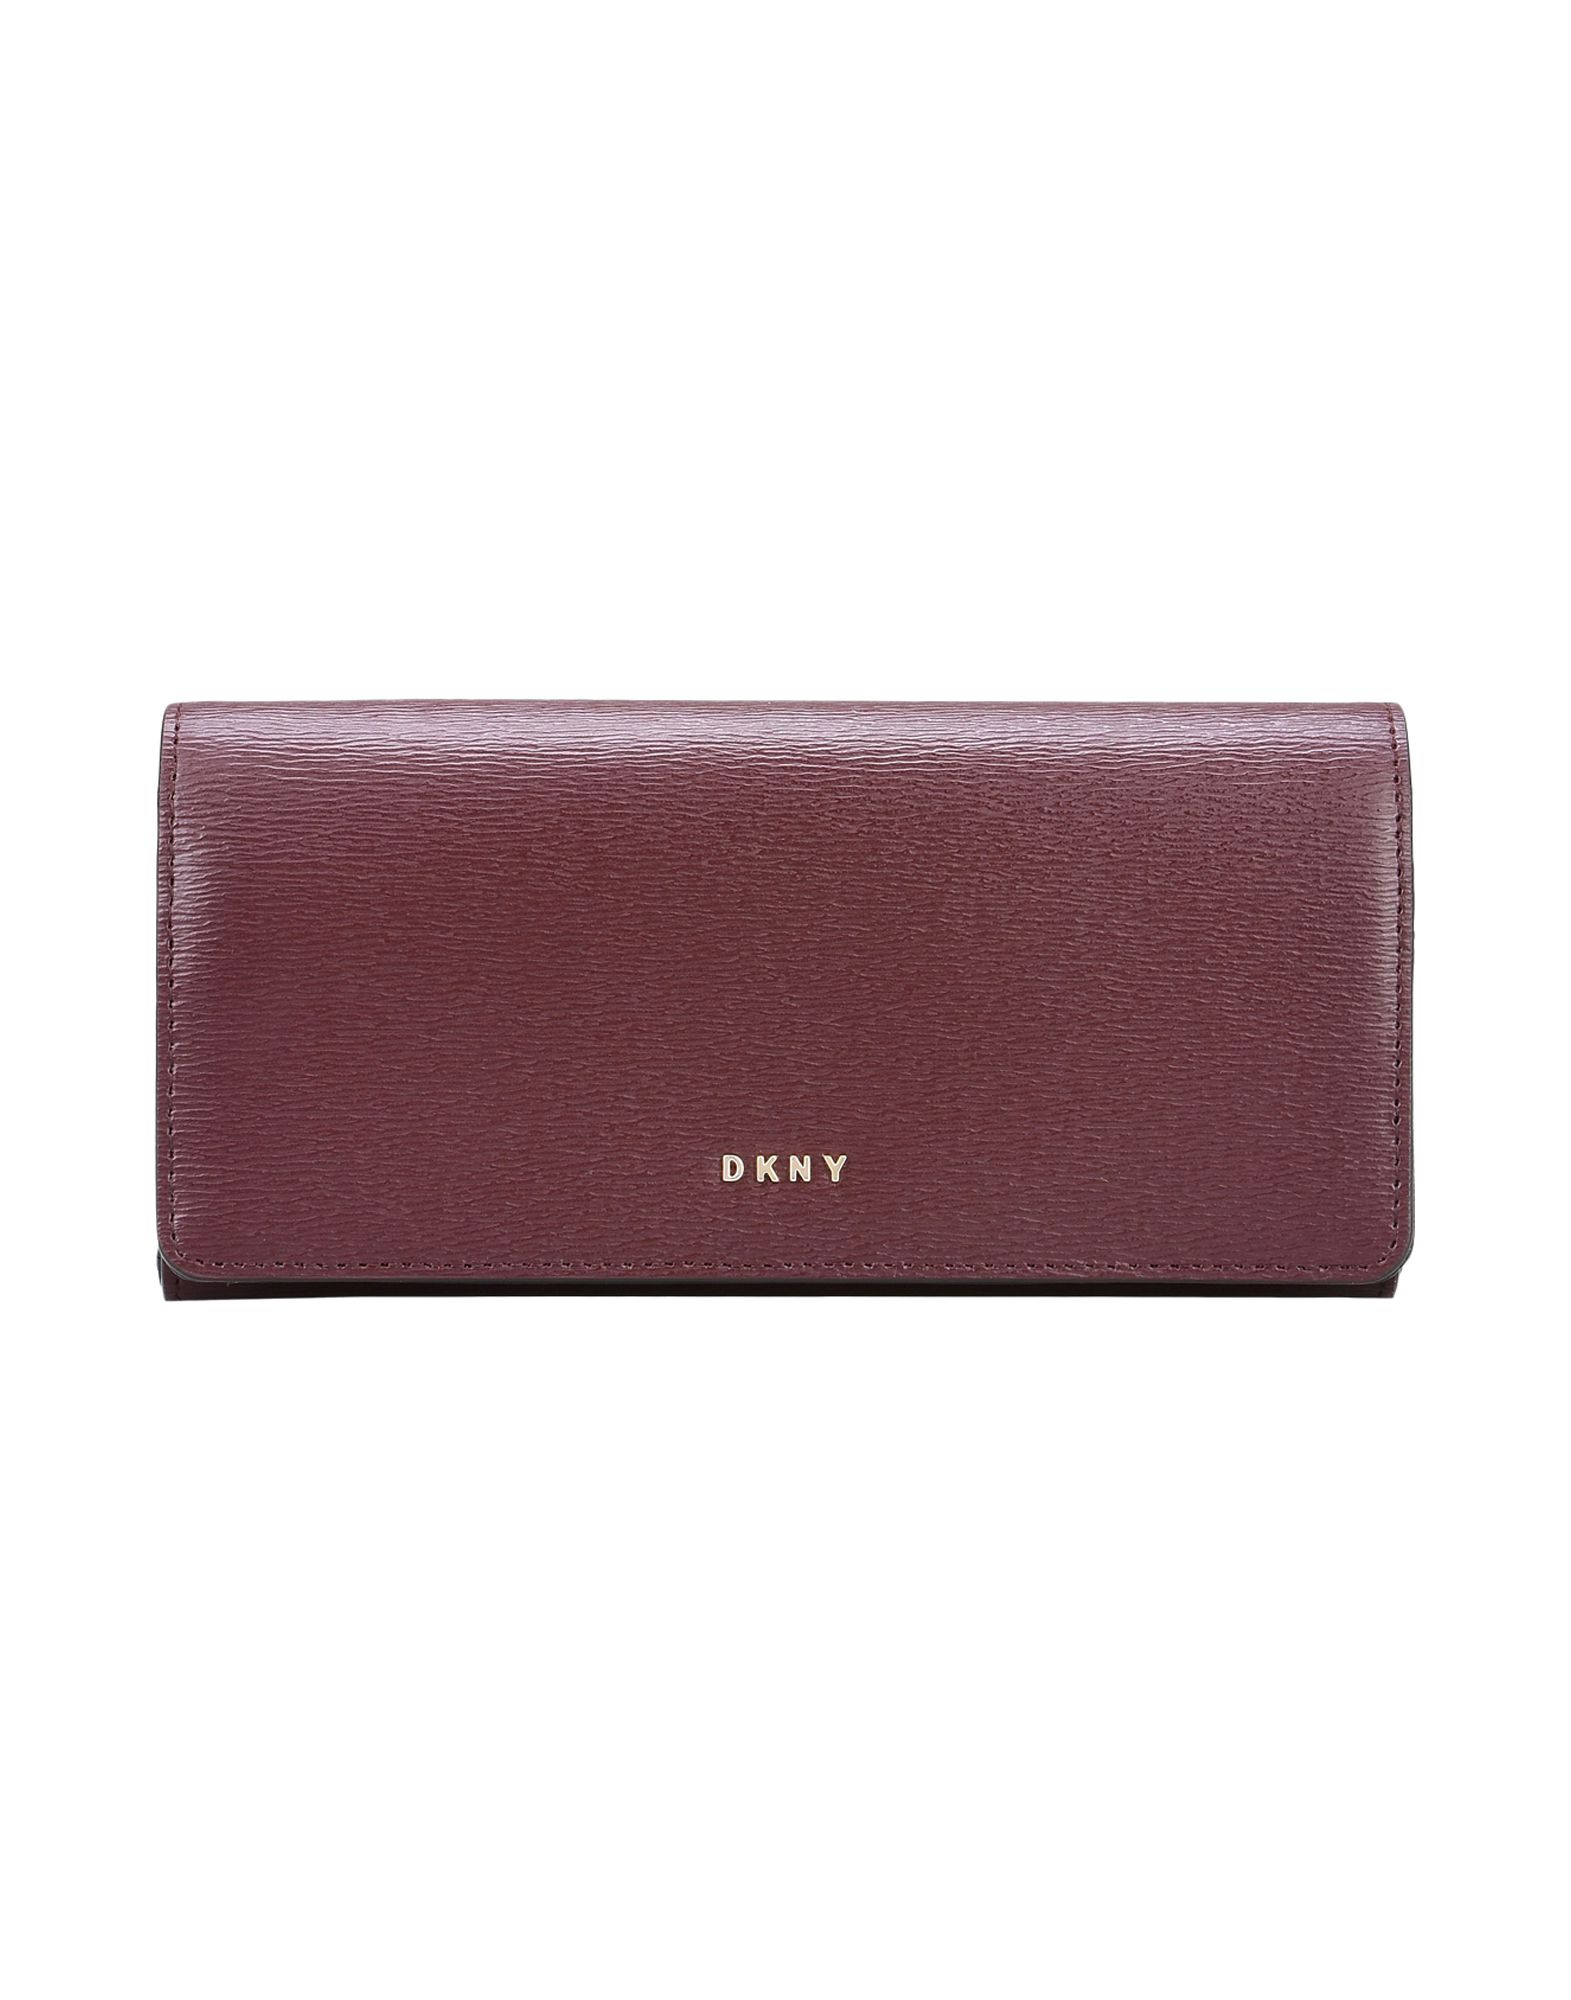 《送料無料》DKNY レディース 財布 ココア 革 LARGE CARRYALL